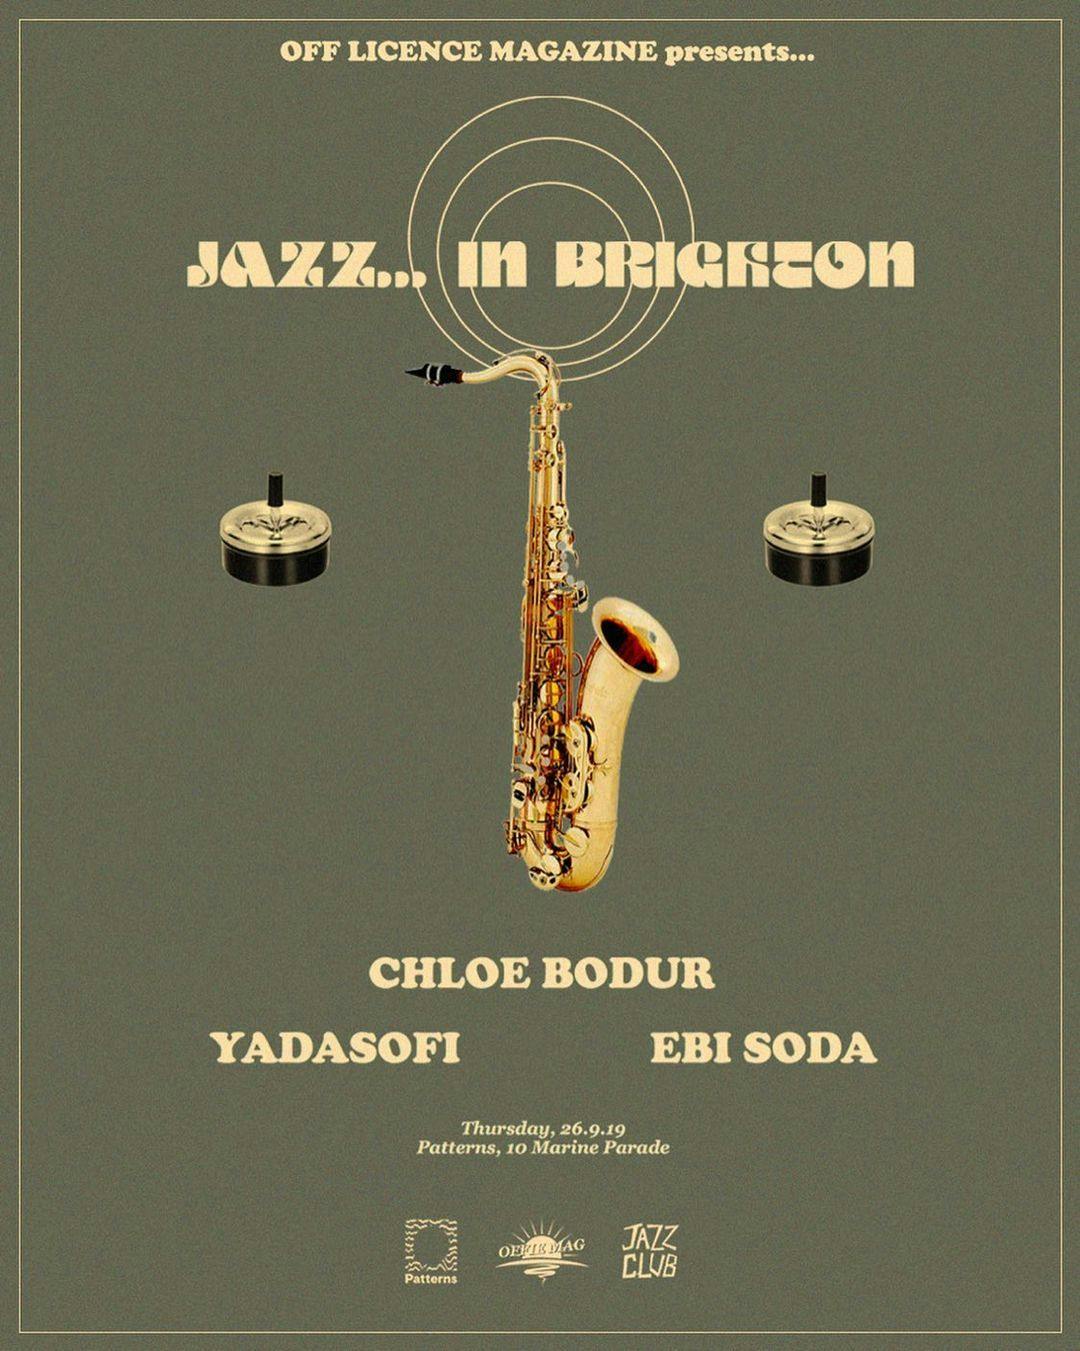 OFFIE MAG PRESENTS... Jazz in Brighton w/ Chloe Bodur, Yadasofi & Ebi Soda